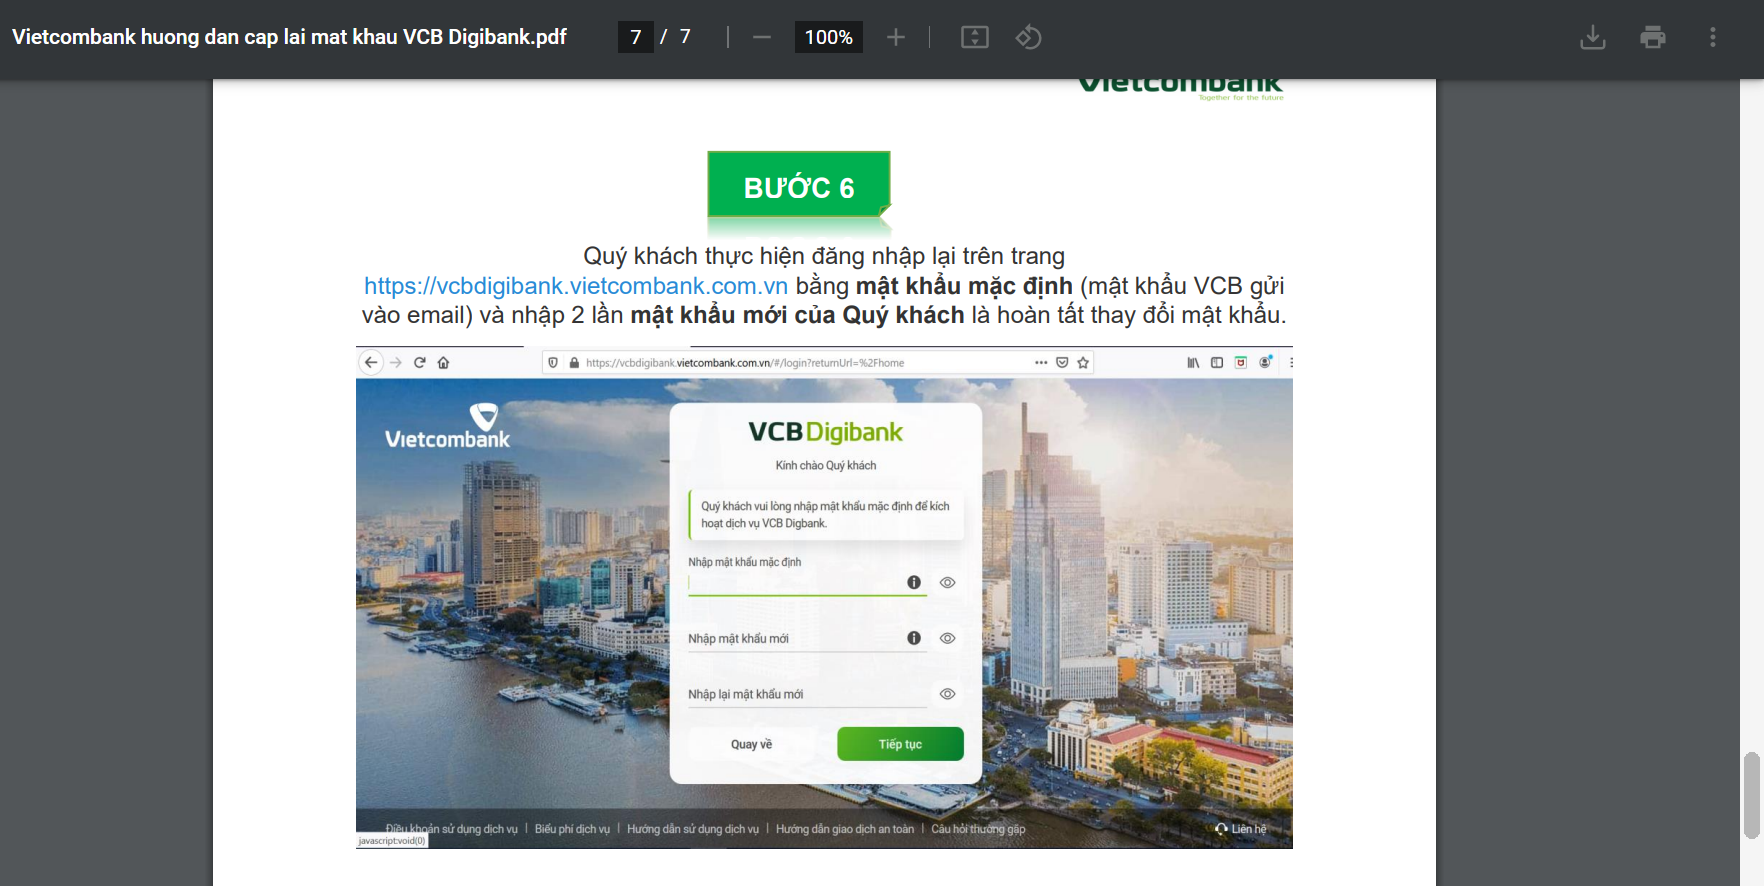 Hướng dẫn cách lấy lại mật khẩu Vietcombank.